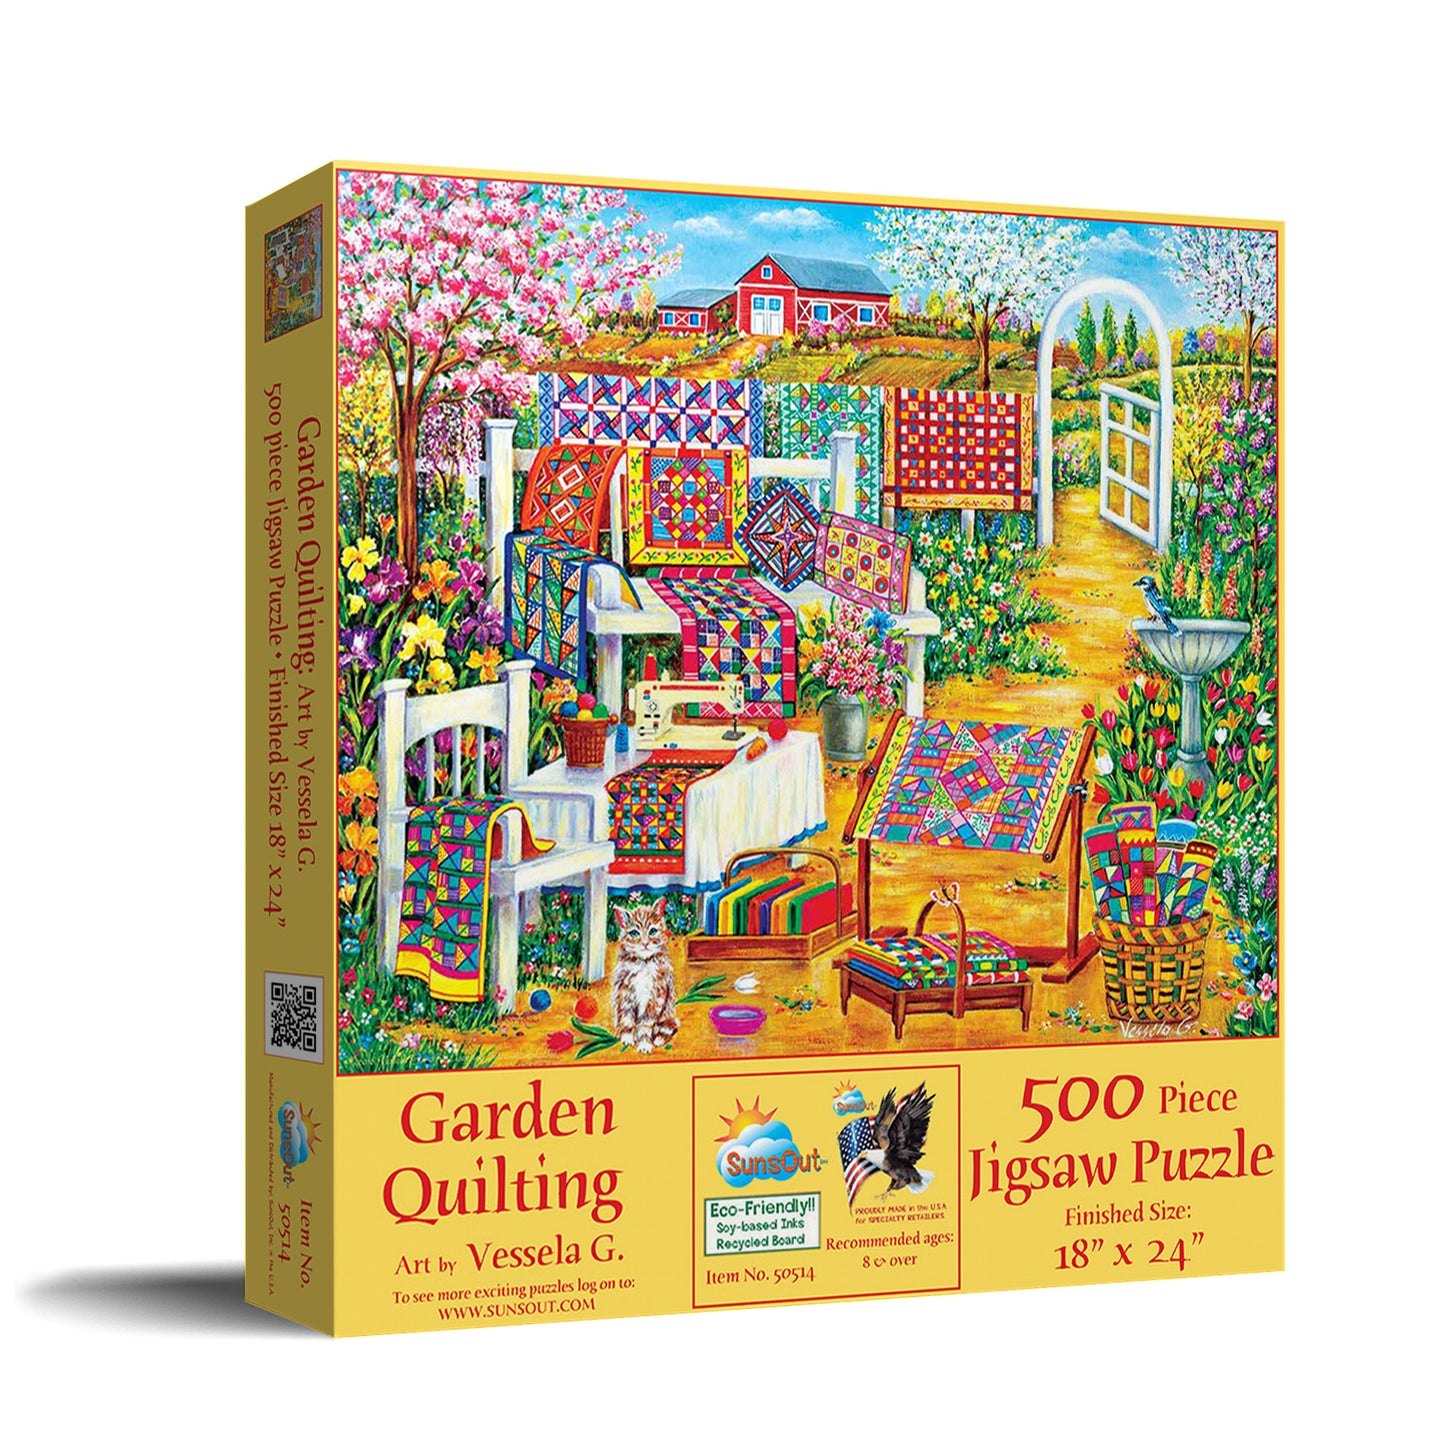 Garden Quilting - 500 Piece Jigsaw Puzzle